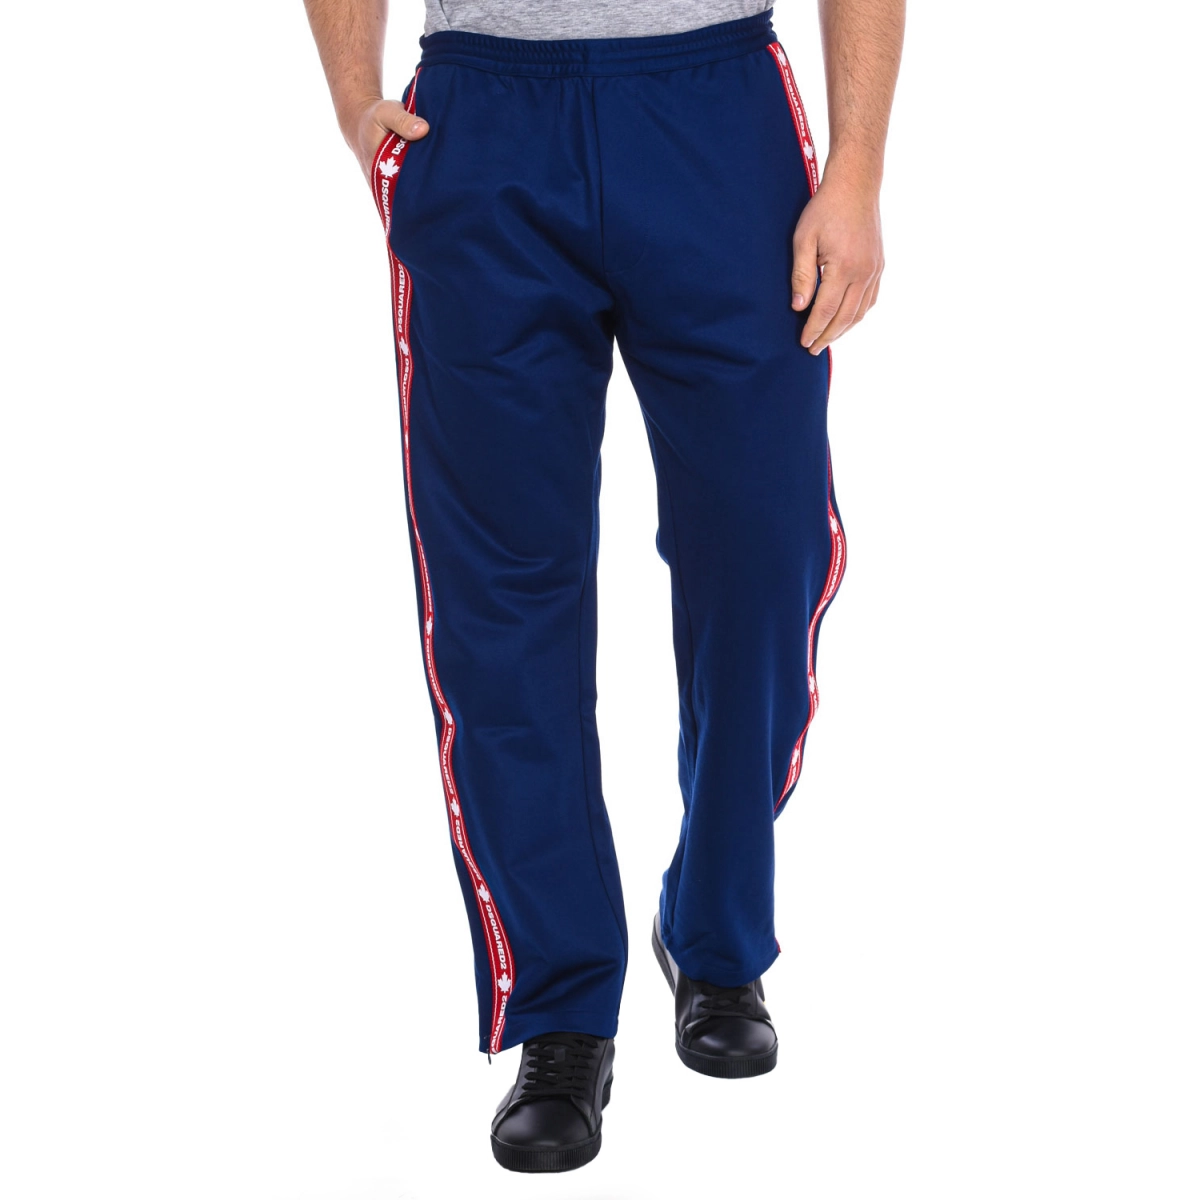 Pantalón deportivo Dsquared2 S74KB0476-S23686 hombre Talla: XL Color: Azul S74KB0476-S23686-477.XL